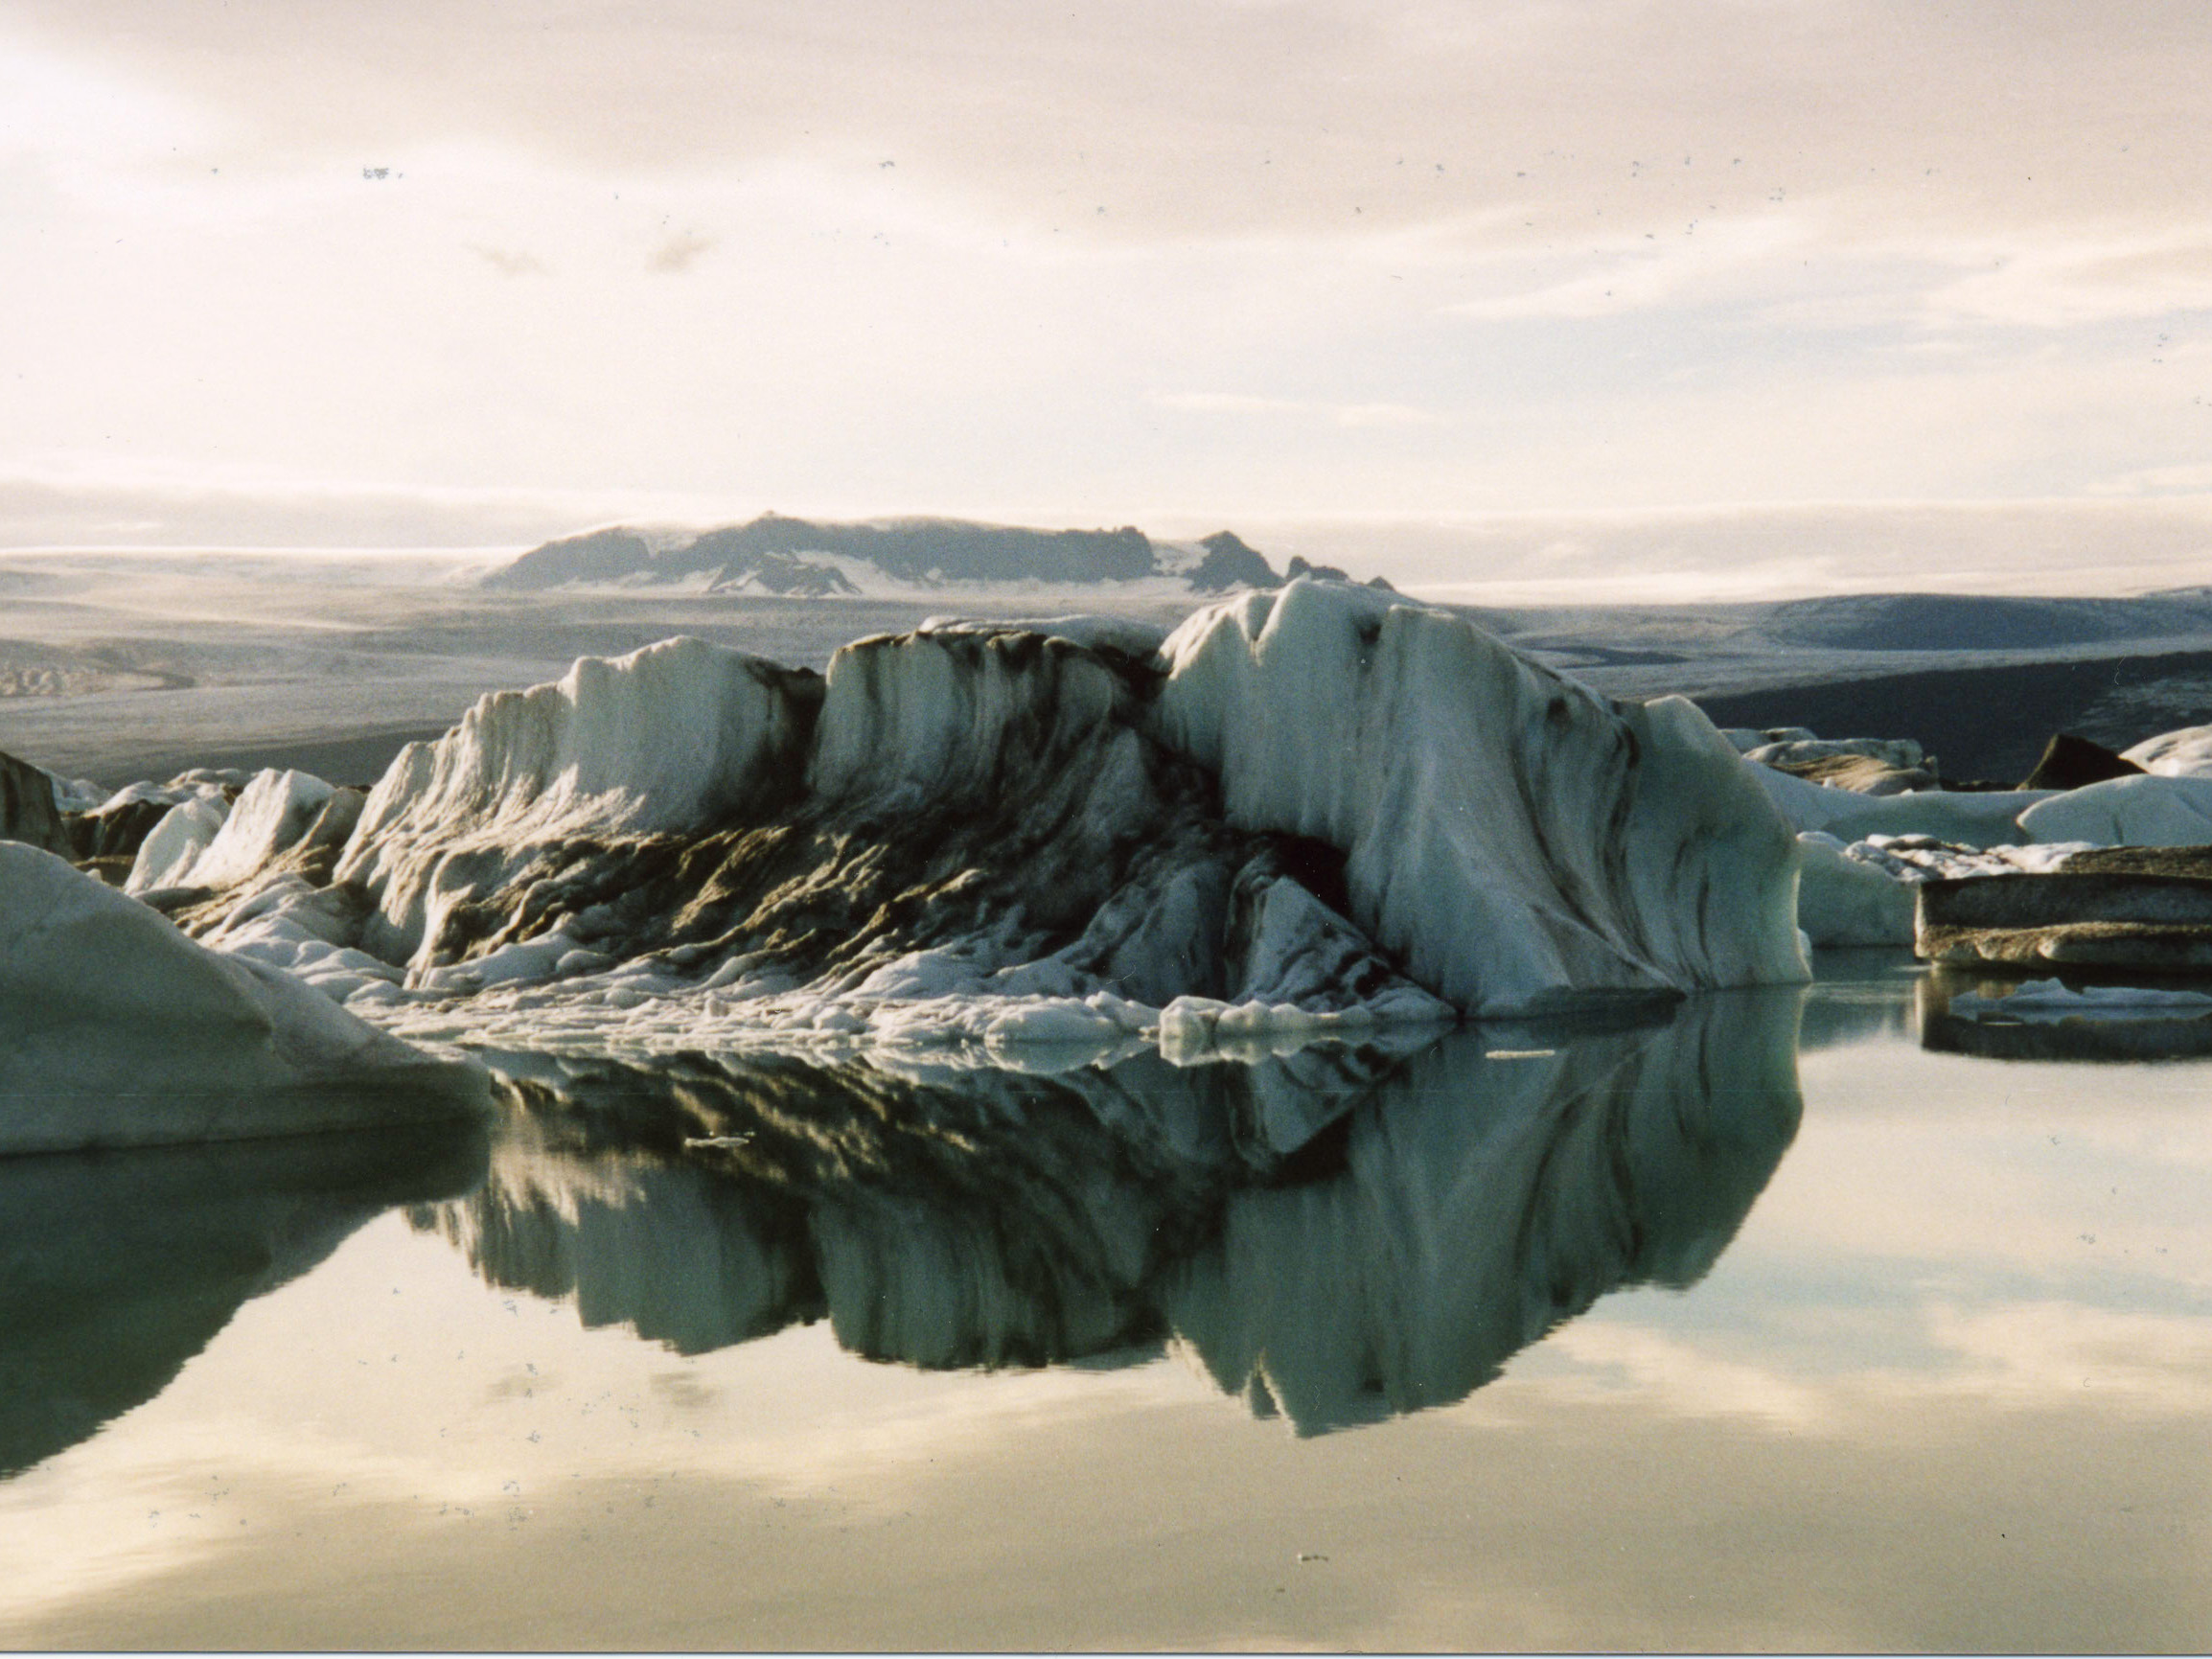 Iceberg on Icelake in Iceland